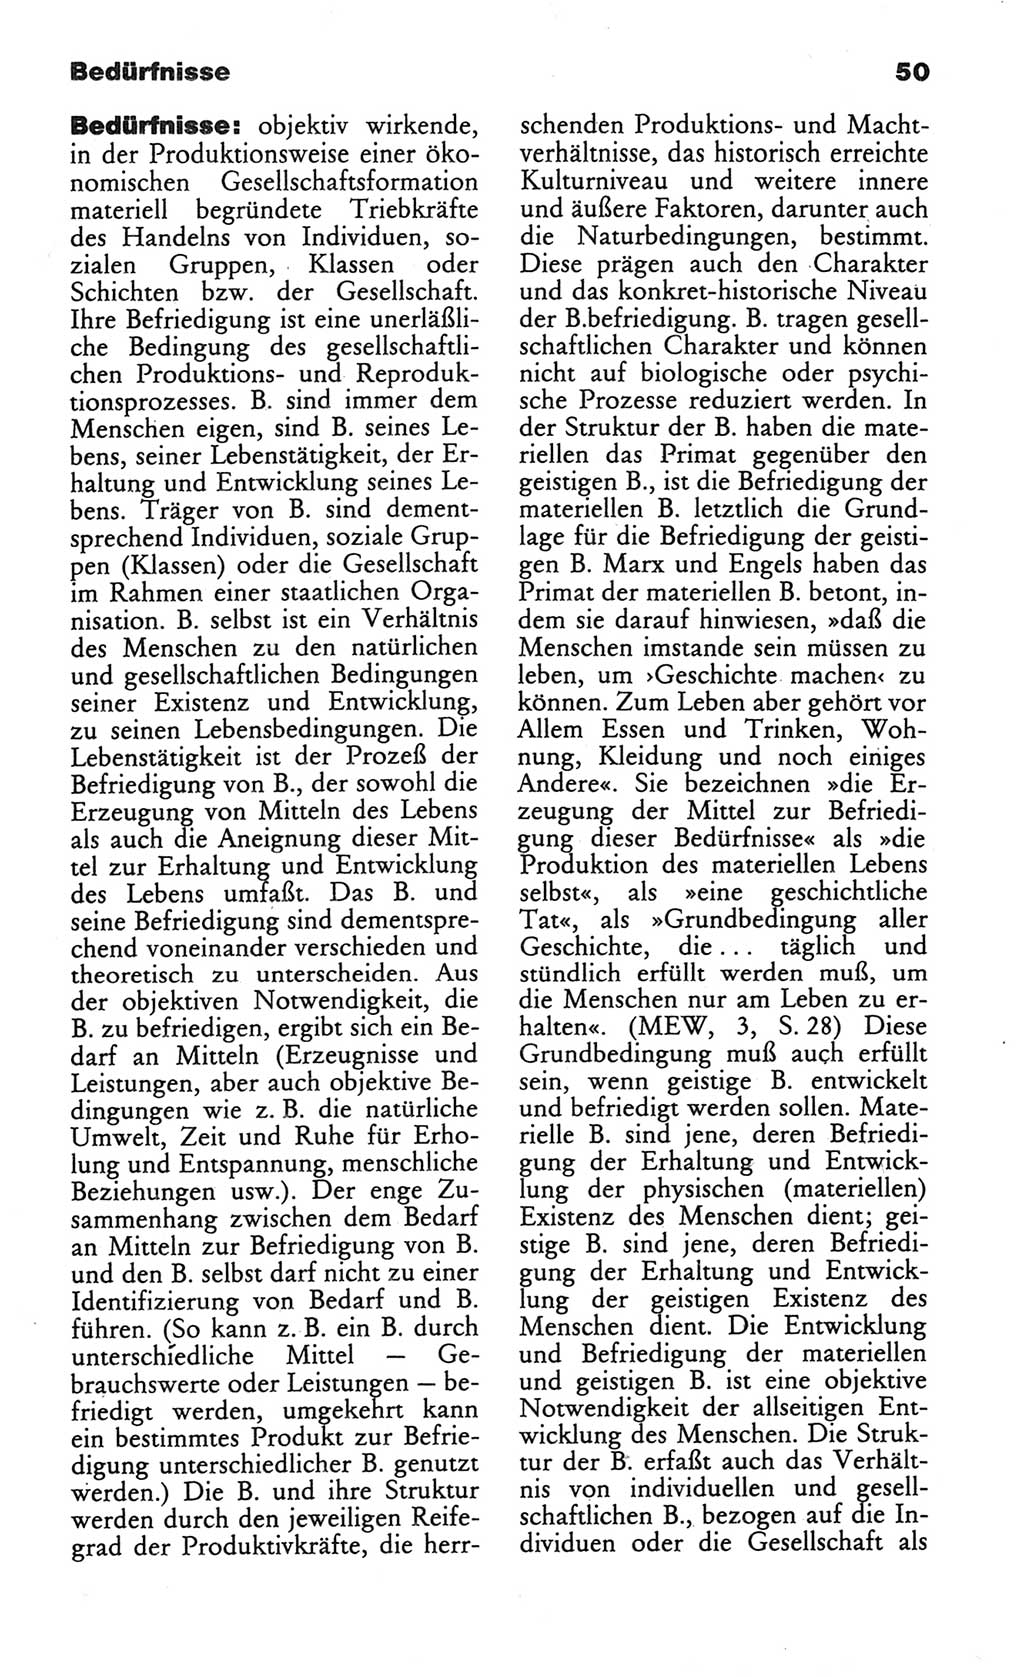 Wörterbuch des wissenschaftlichen Kommunismus [Deutsche Demokratische Republik (DDR)] 1984, Seite 50 (Wb. wiss. Komm. DDR 1984, S. 50)